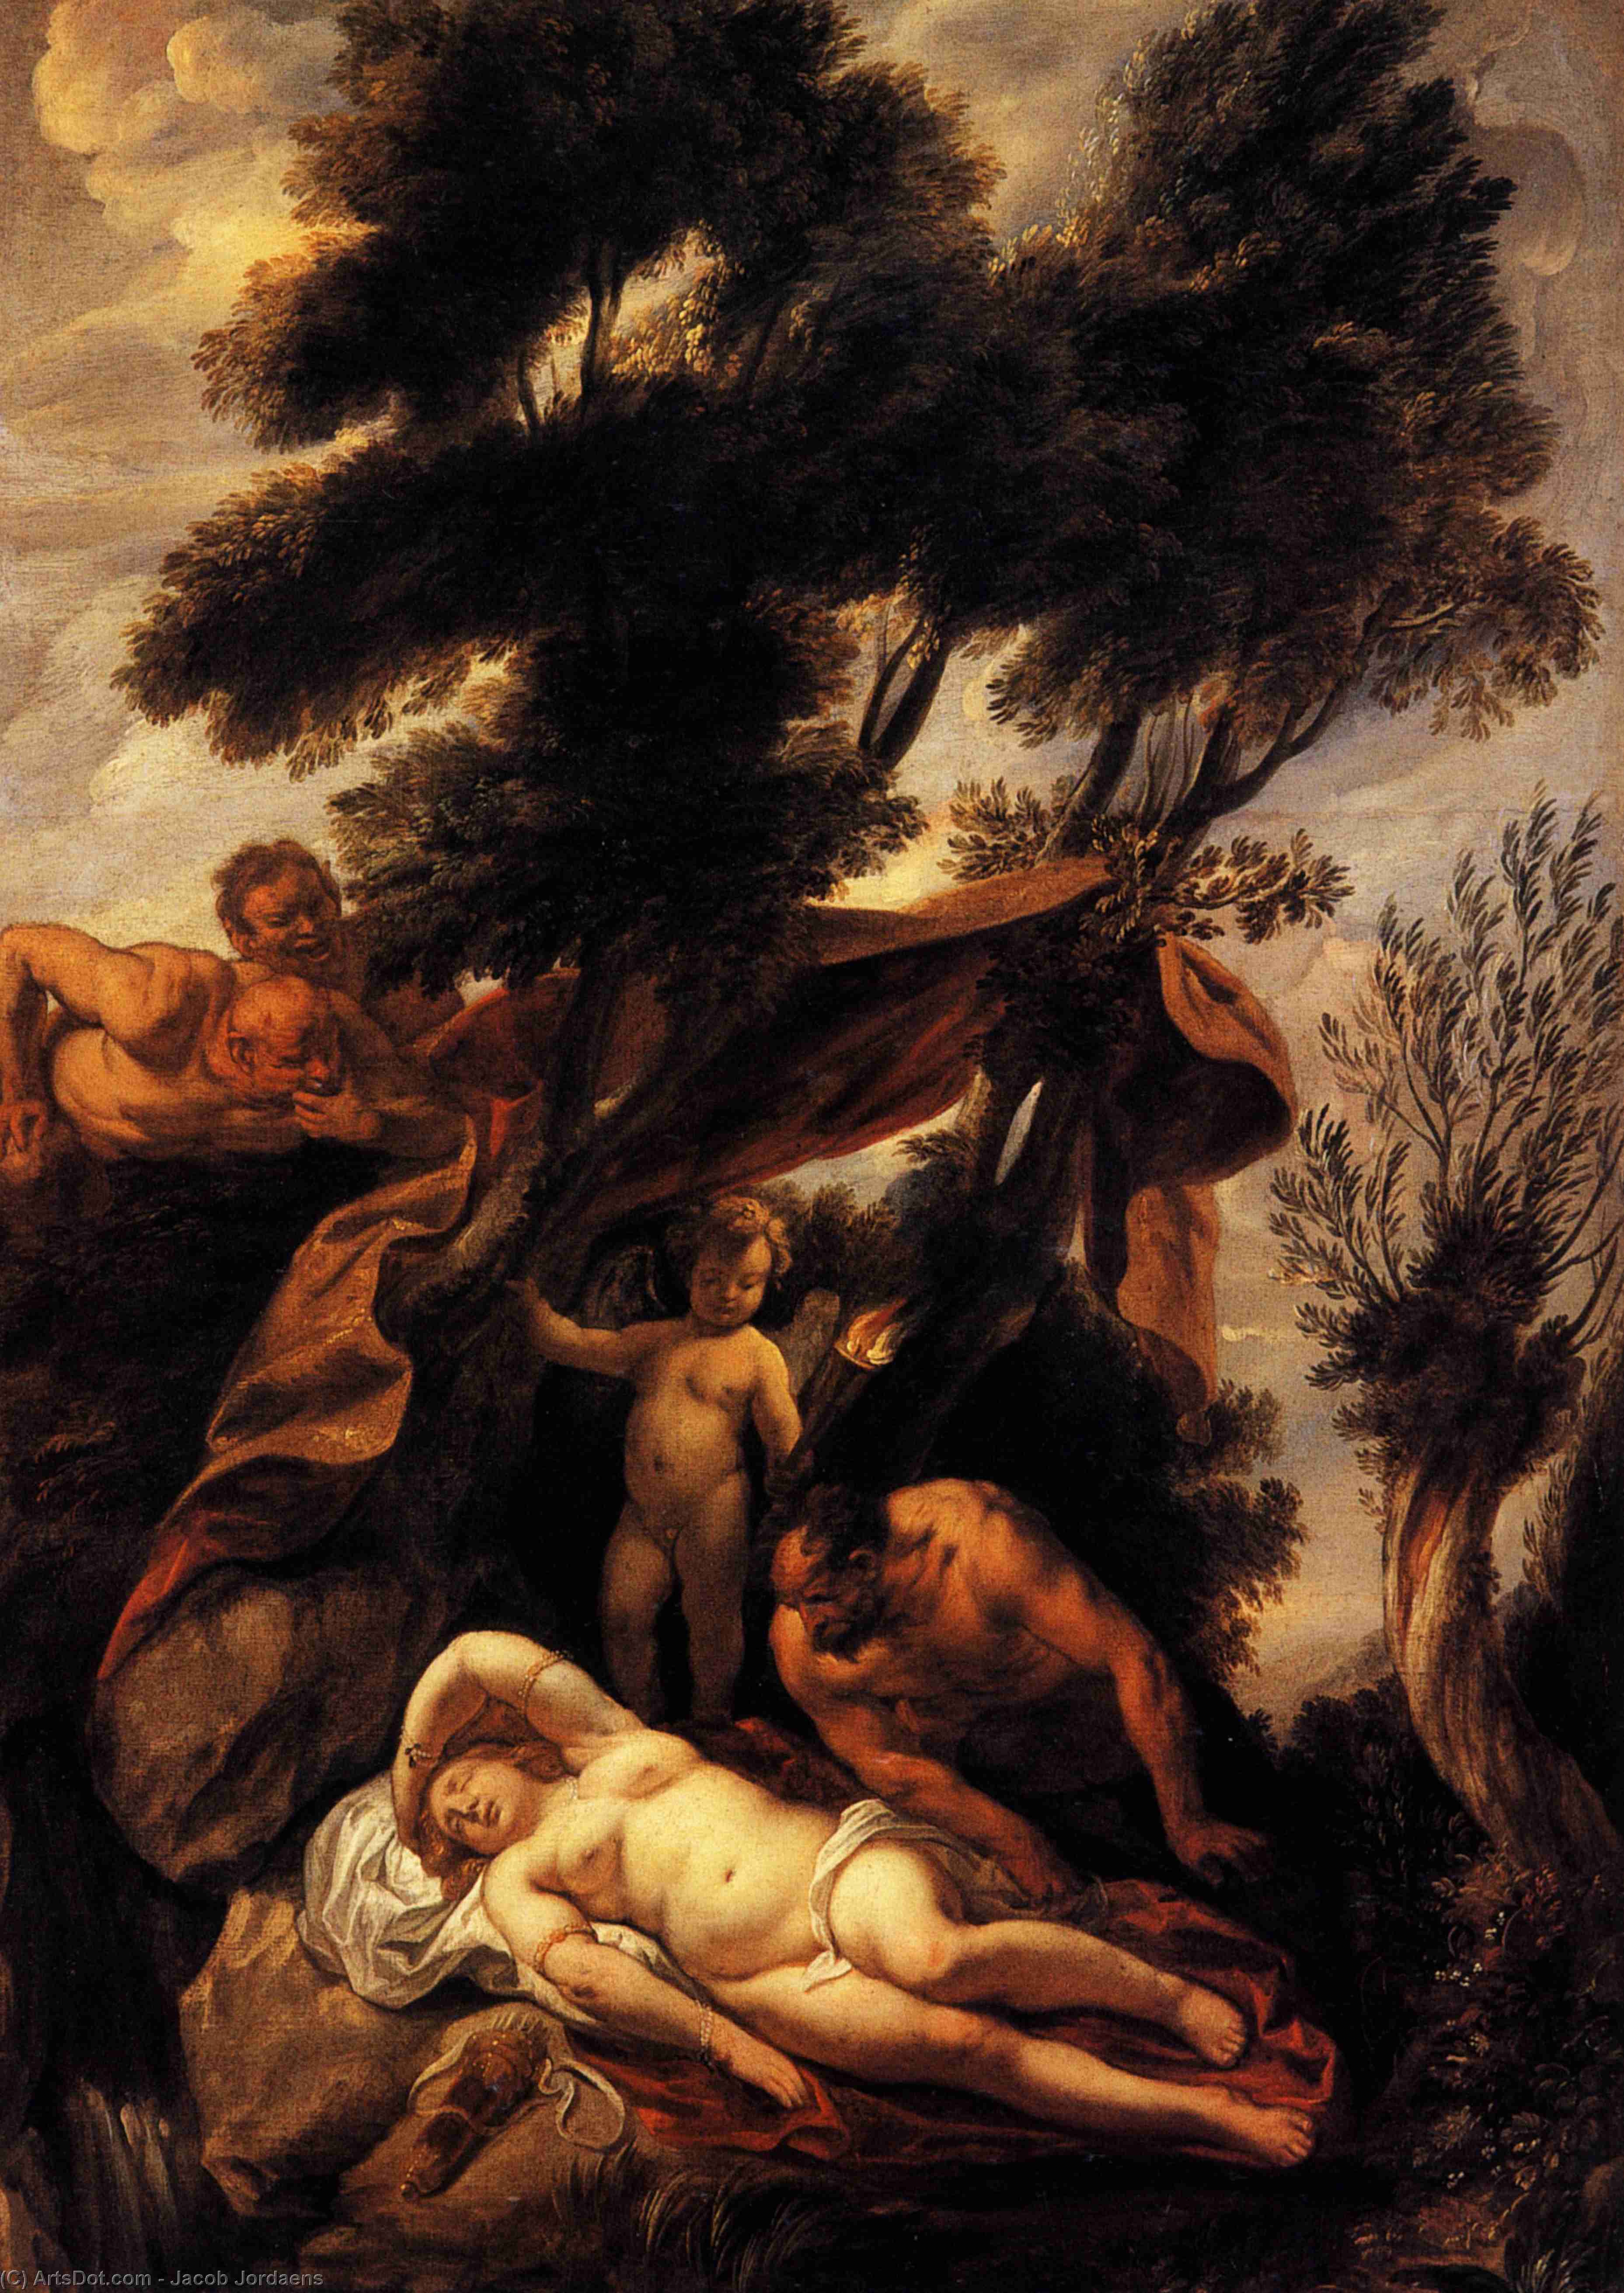 WikiOO.org - Encyclopedia of Fine Arts - Målning, konstverk Jacob Jordaens - Sleep of Antiope